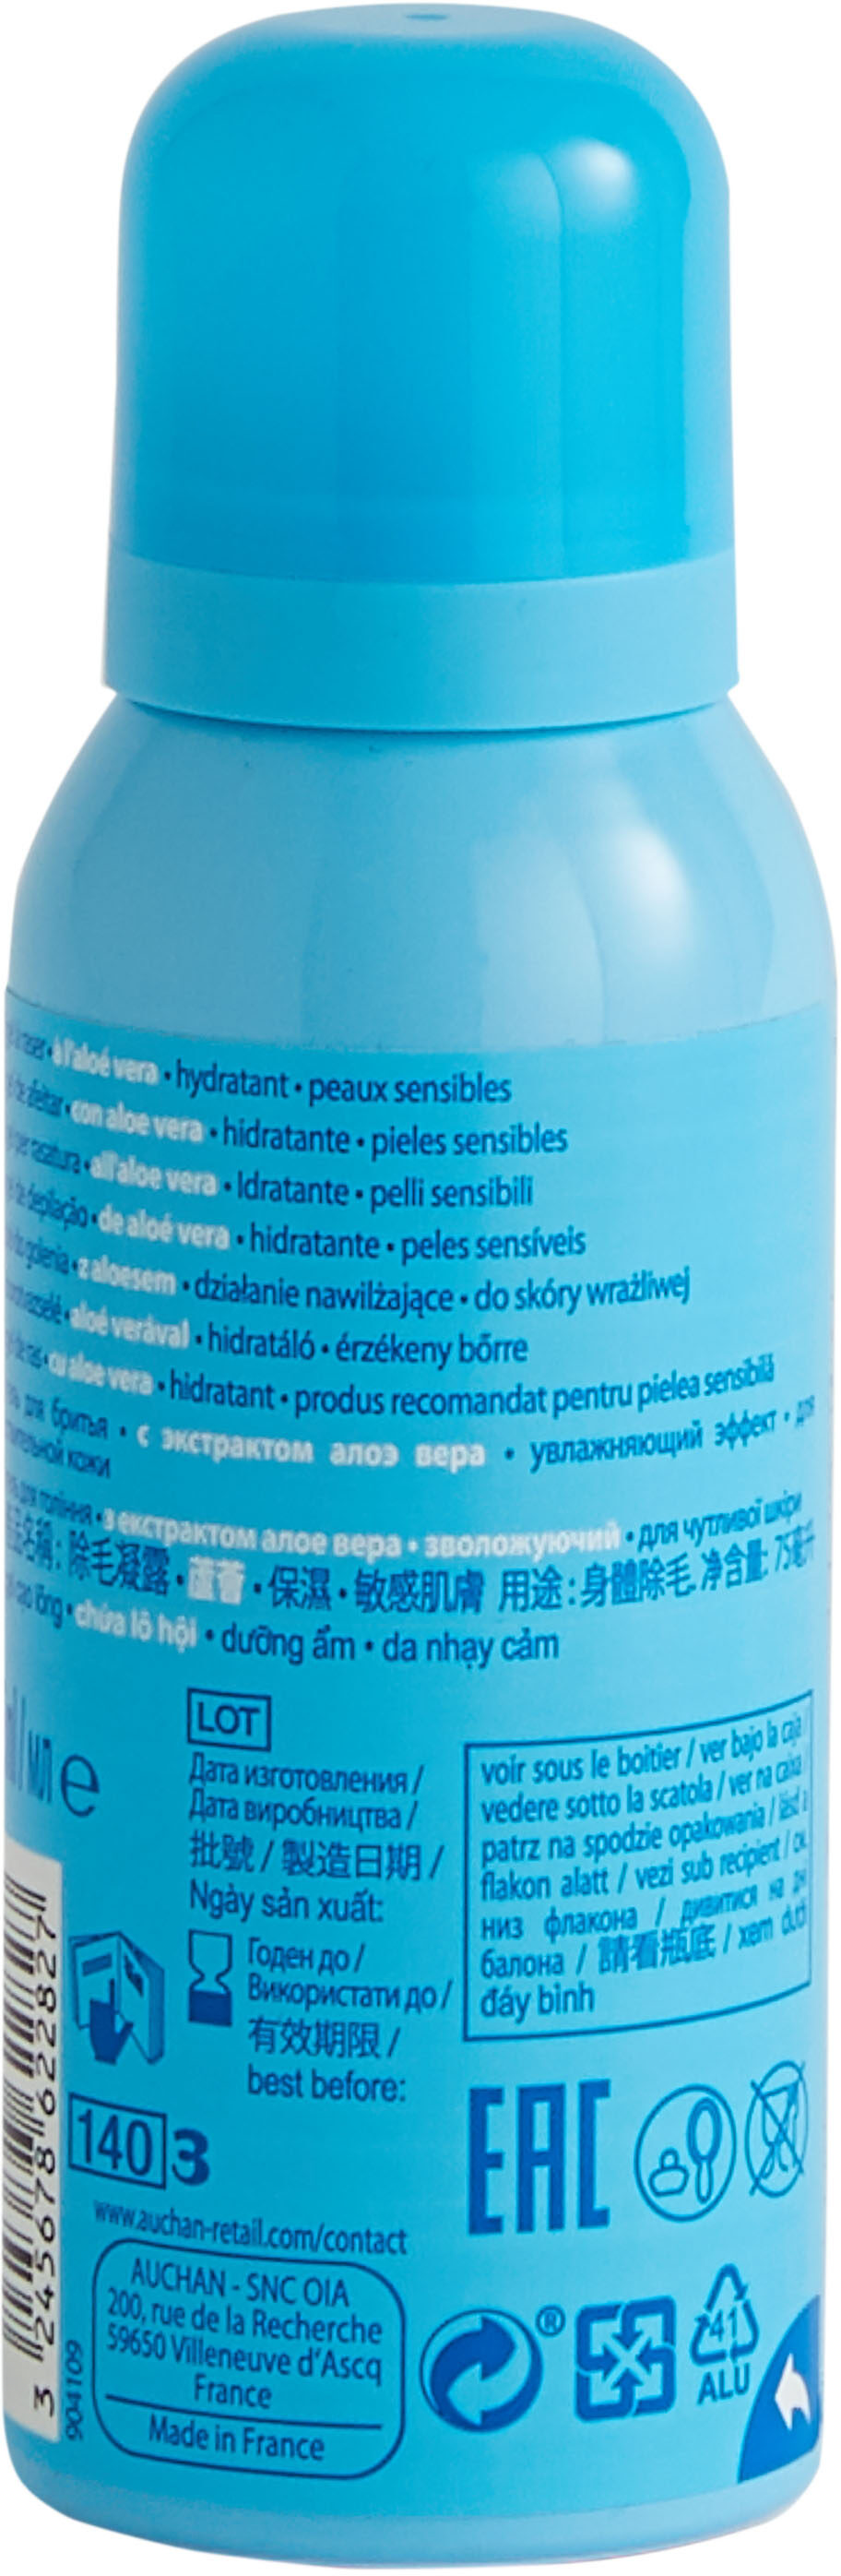 Cosmia - gel à raser - à l'aloe vera - peaux sensibles - 75 ml / volume nomial 140ml ? - Produit - fr